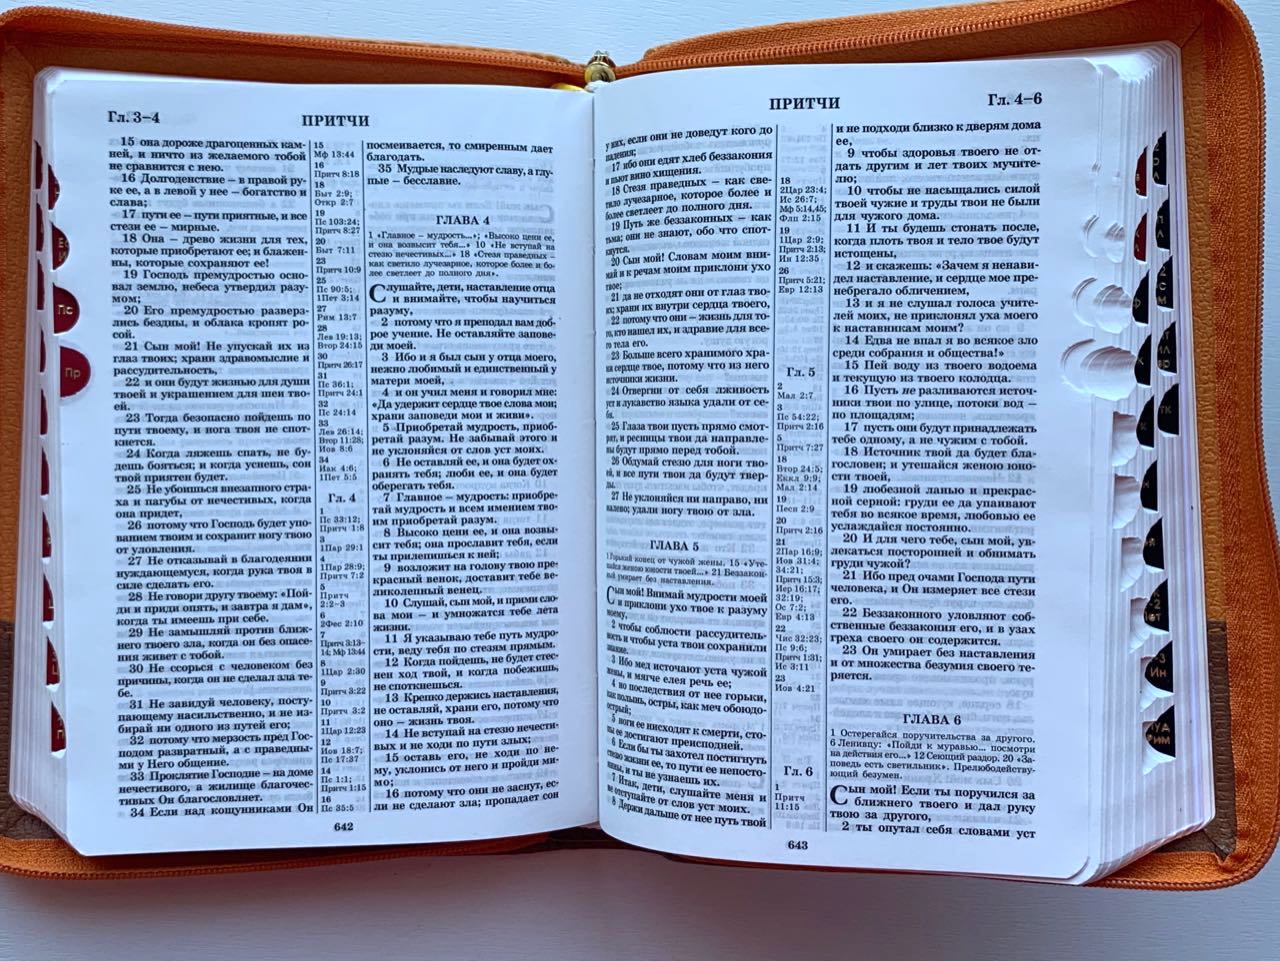 БИБЛИЯ 046zti формат, переплет из искусственной кожи на молнии с индексами, надпись золотом "Библия", цвет лимон металлик, средний формат, 132*182 мм, цветные карты, шрифт 12 кегель